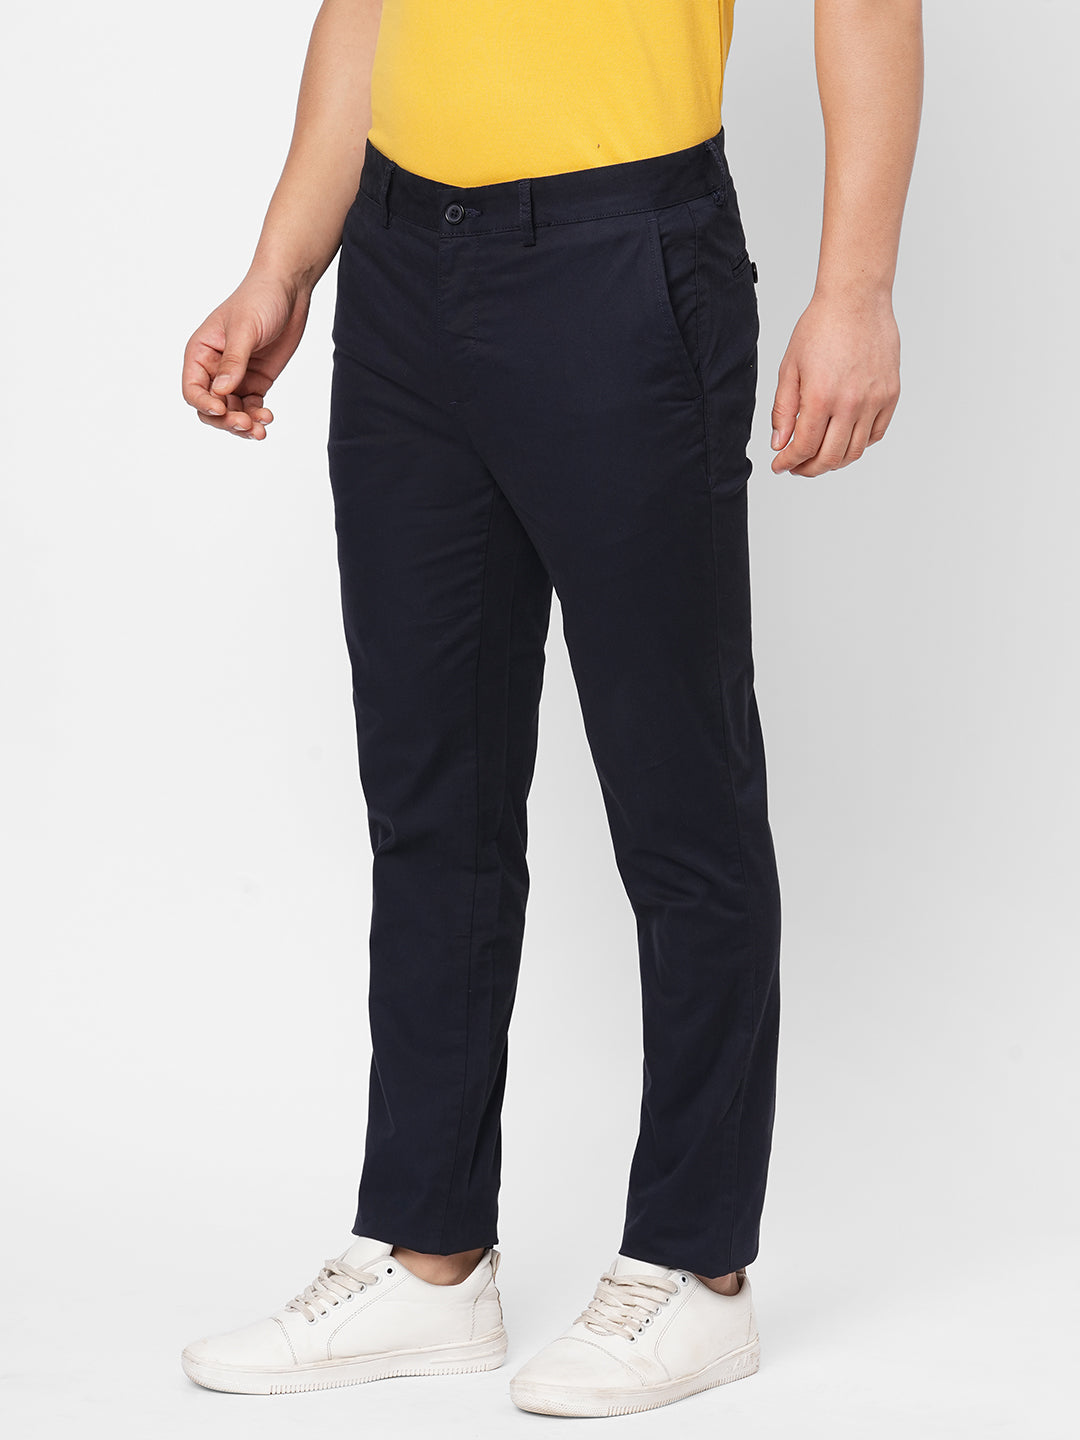 Men's Cotton Lycra Navy Slim Fit Pant